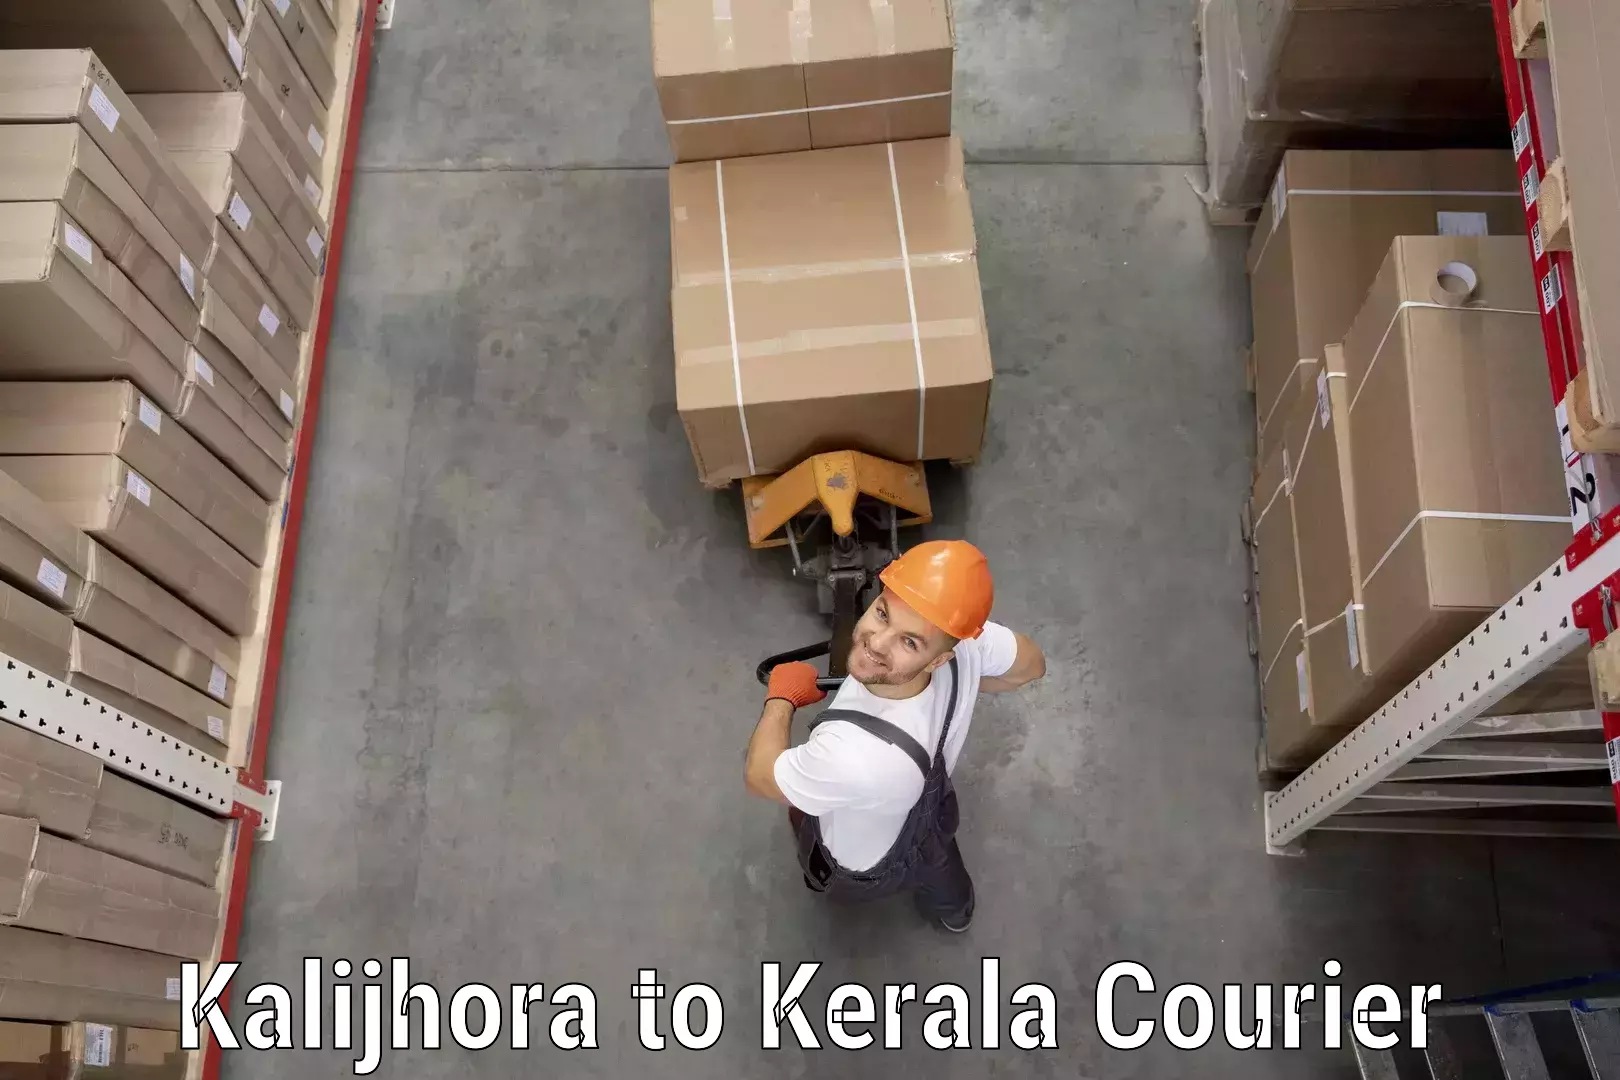 Next-day freight services Kalijhora to Kerala